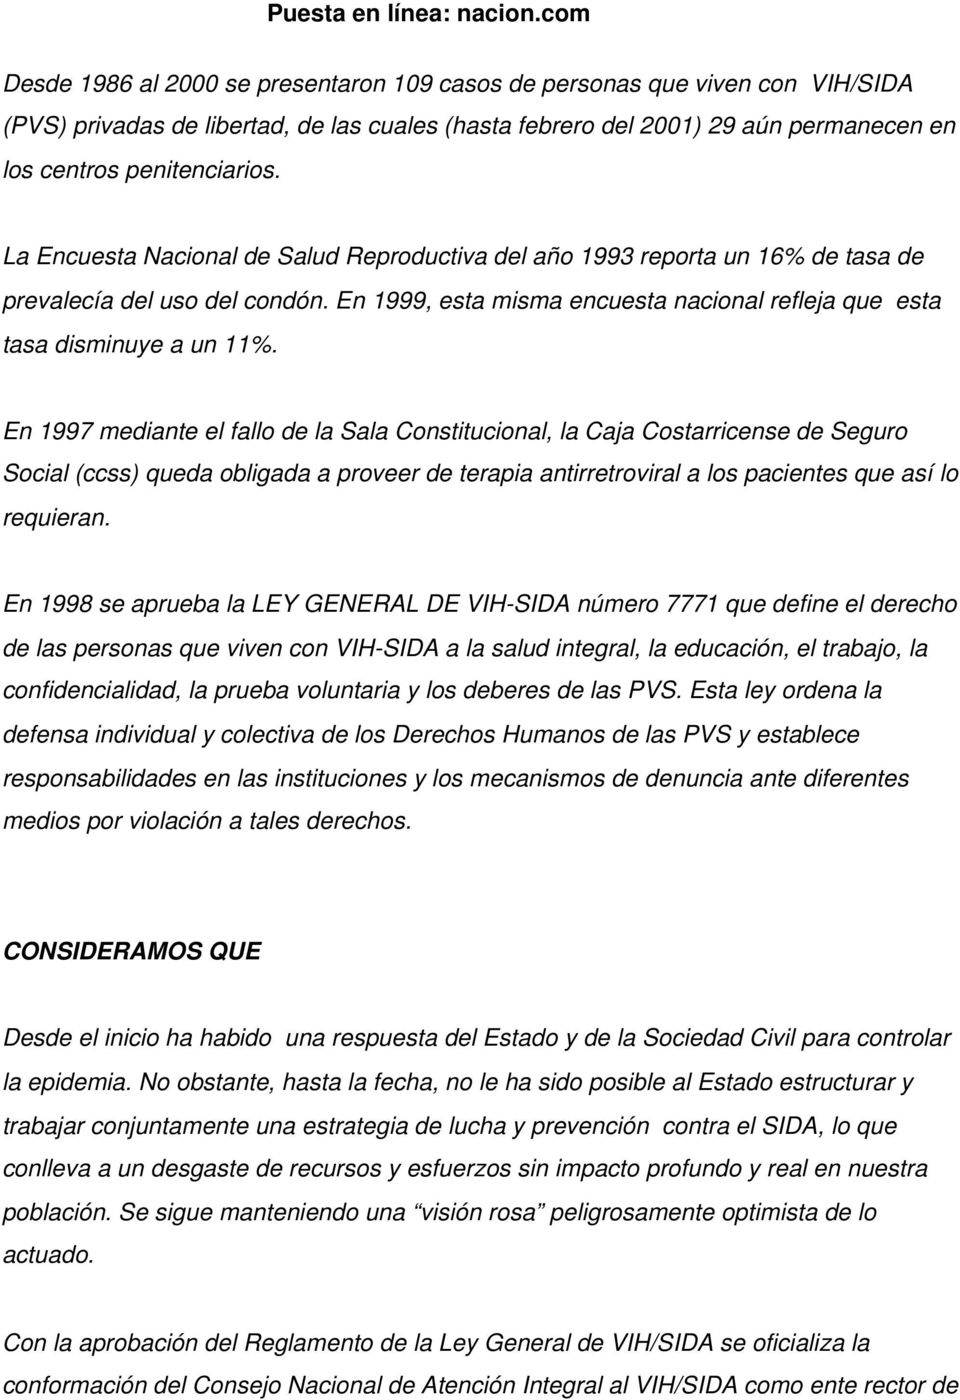 En 1997 mediante el fallo de la Sala Constitucional, la Caja Costarricense de Seguro Social (ccss) queda obligada a proveer de terapia antirretroviral a los pacientes que así lo requieran.